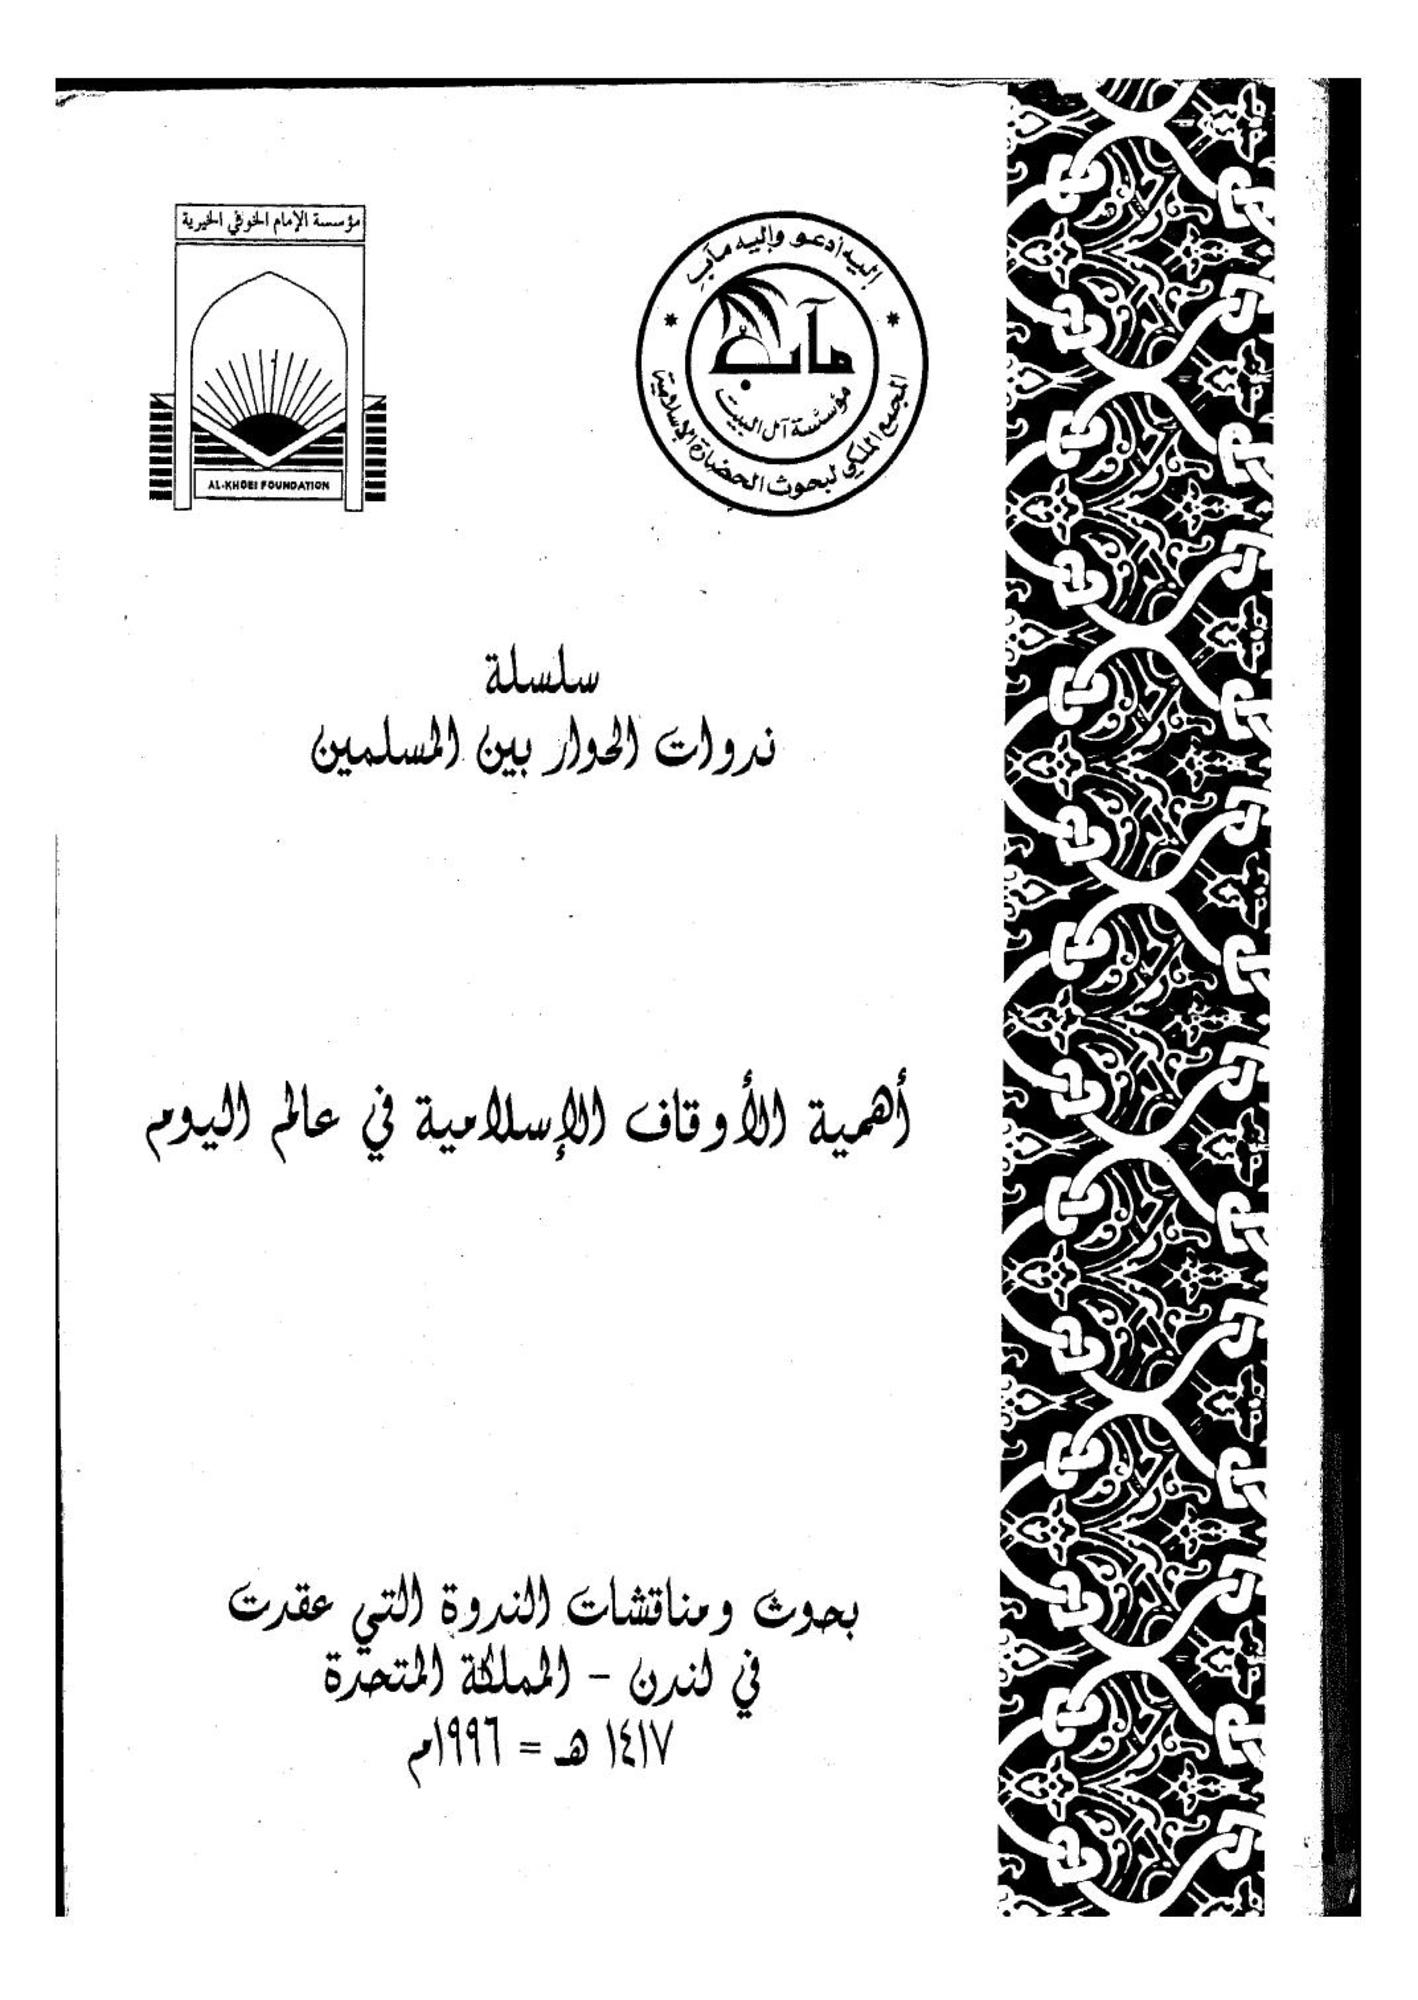 تحميل كتاب اهمية الاوقاف الاسلامية فى عالم اليوم pdf ل - مجاناً | مكتبة كتب pdf